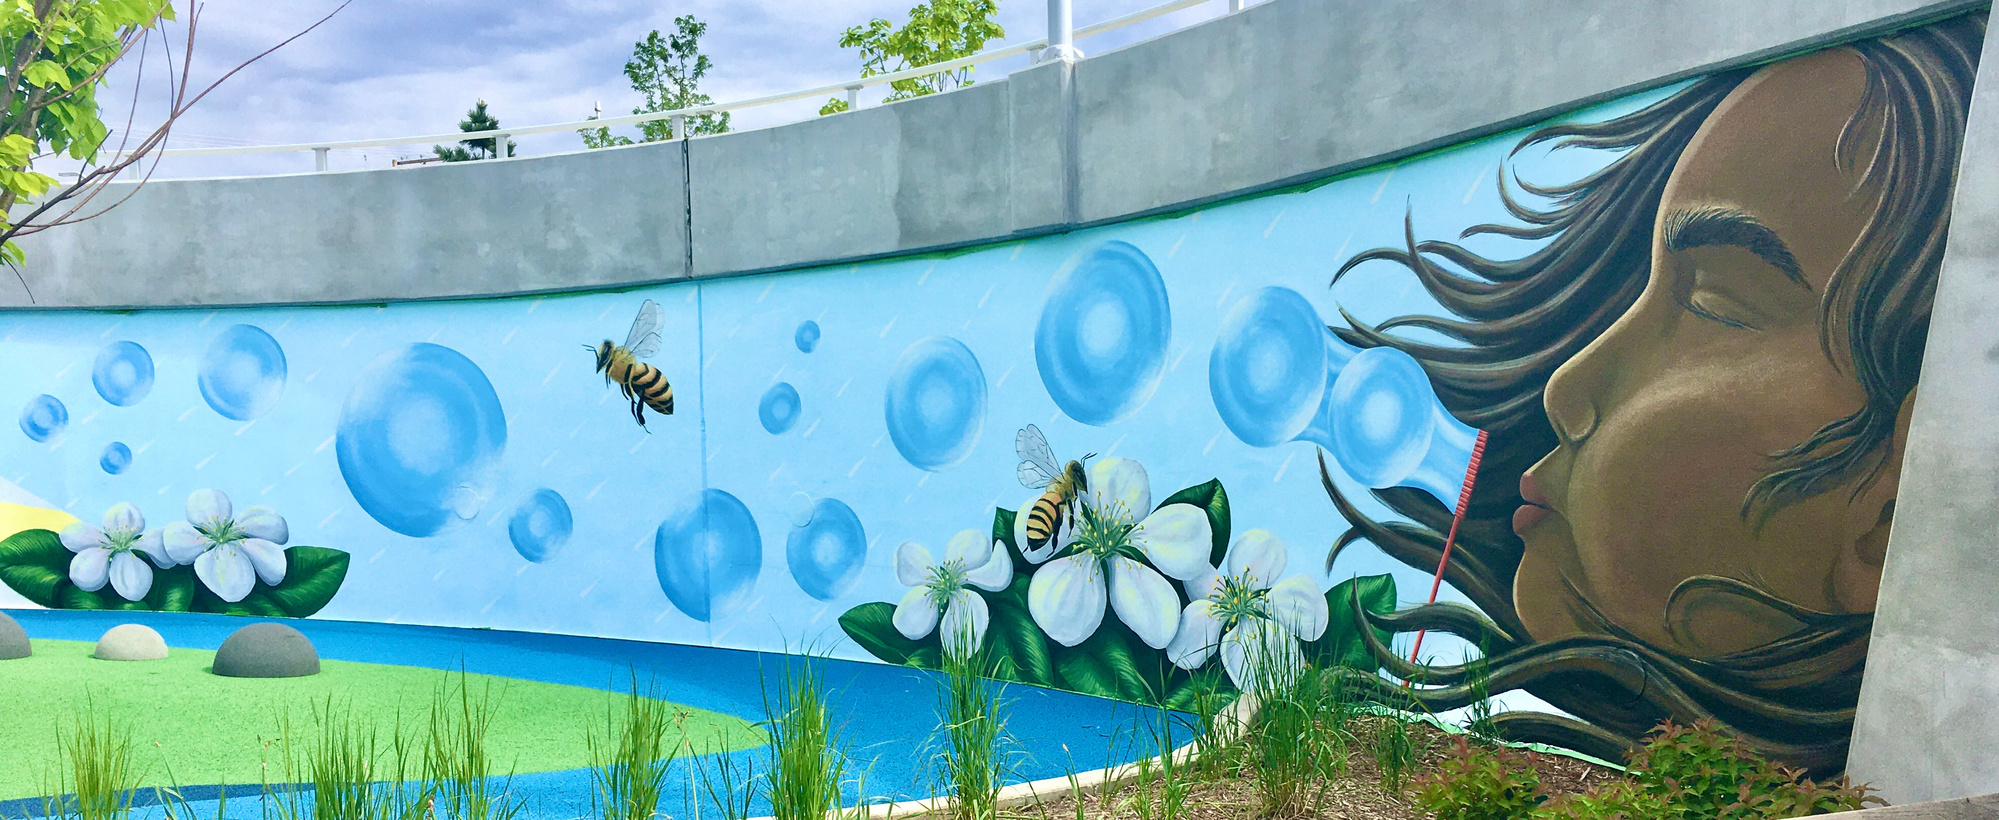 “JOY in Every Season” Mural at Howard Park in South Bend, IN.